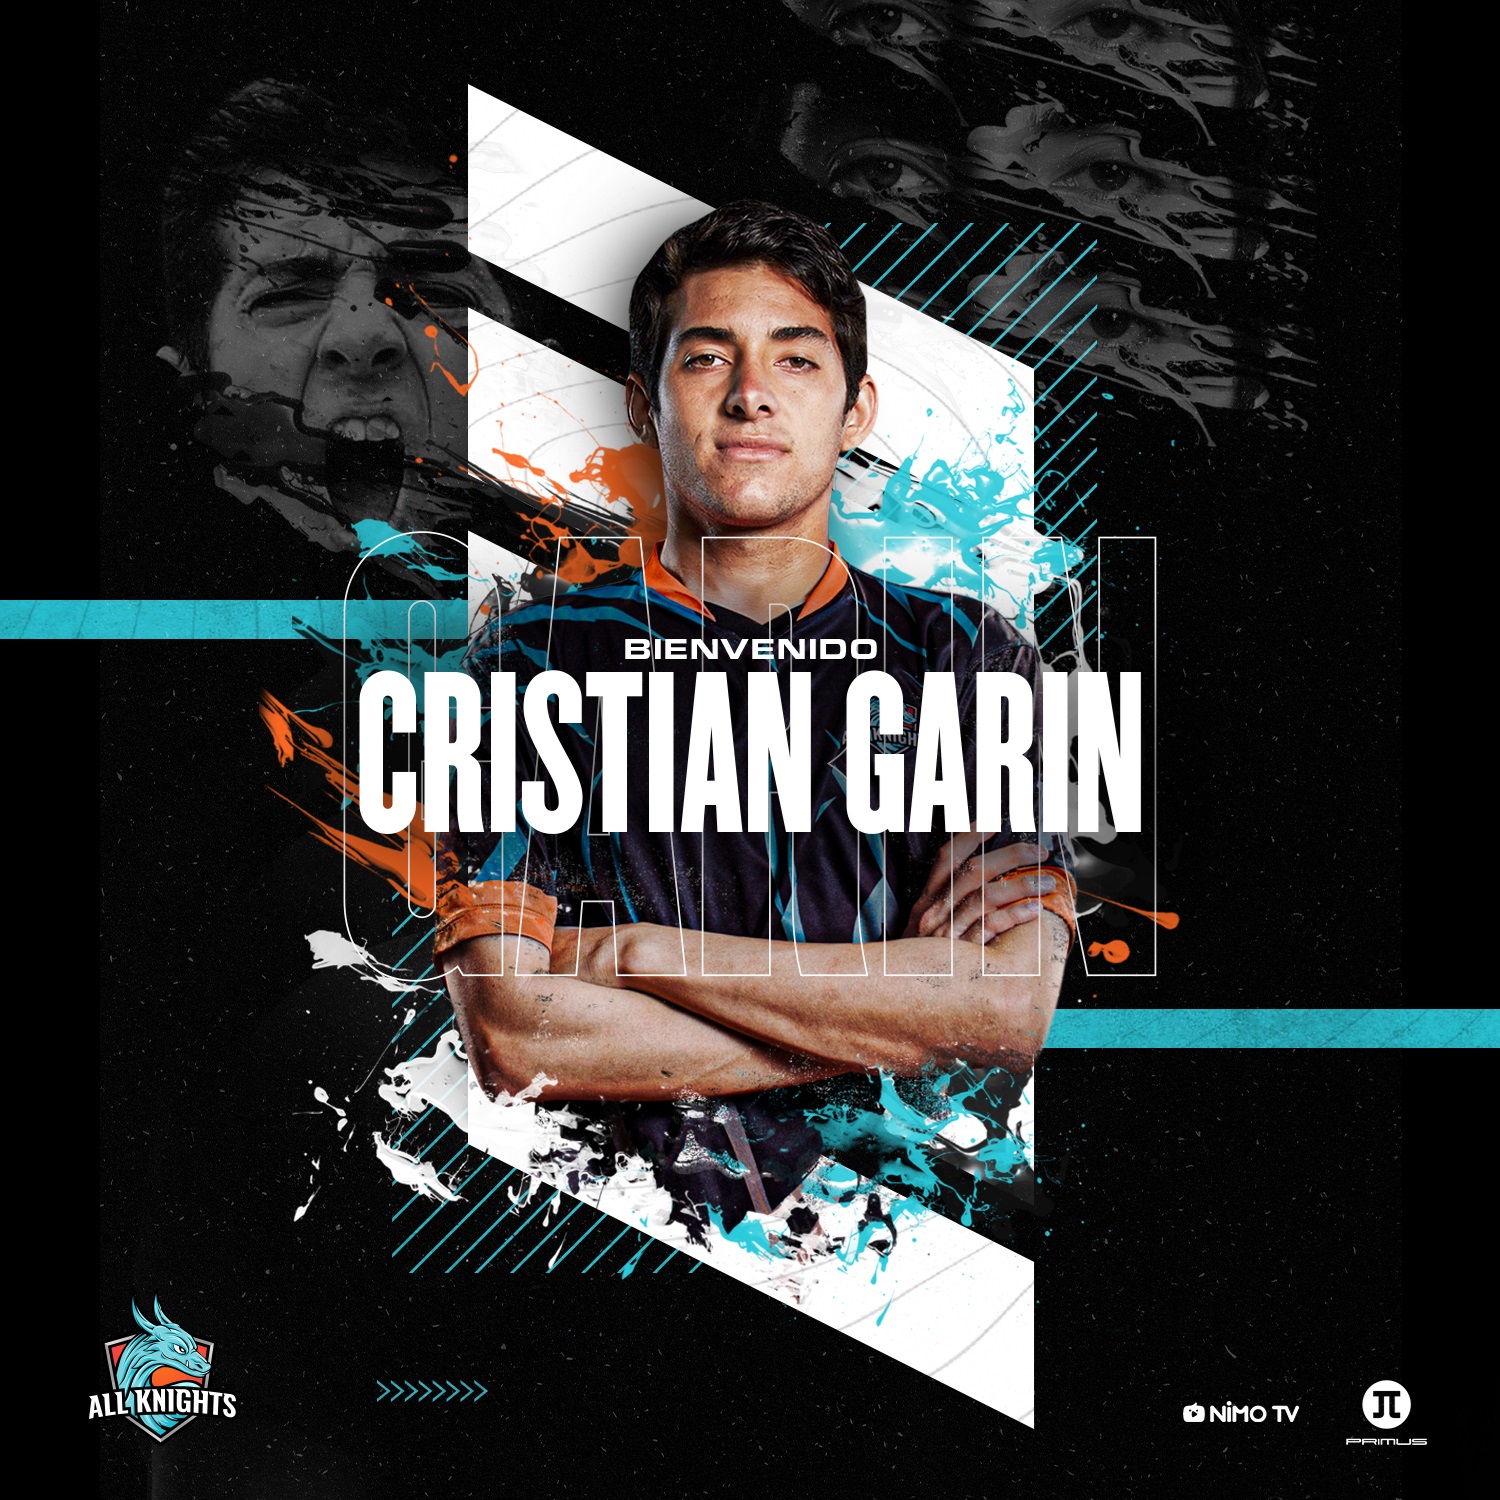 Cristian Garín apuesta por los esports e ingresa como socio a All Knights